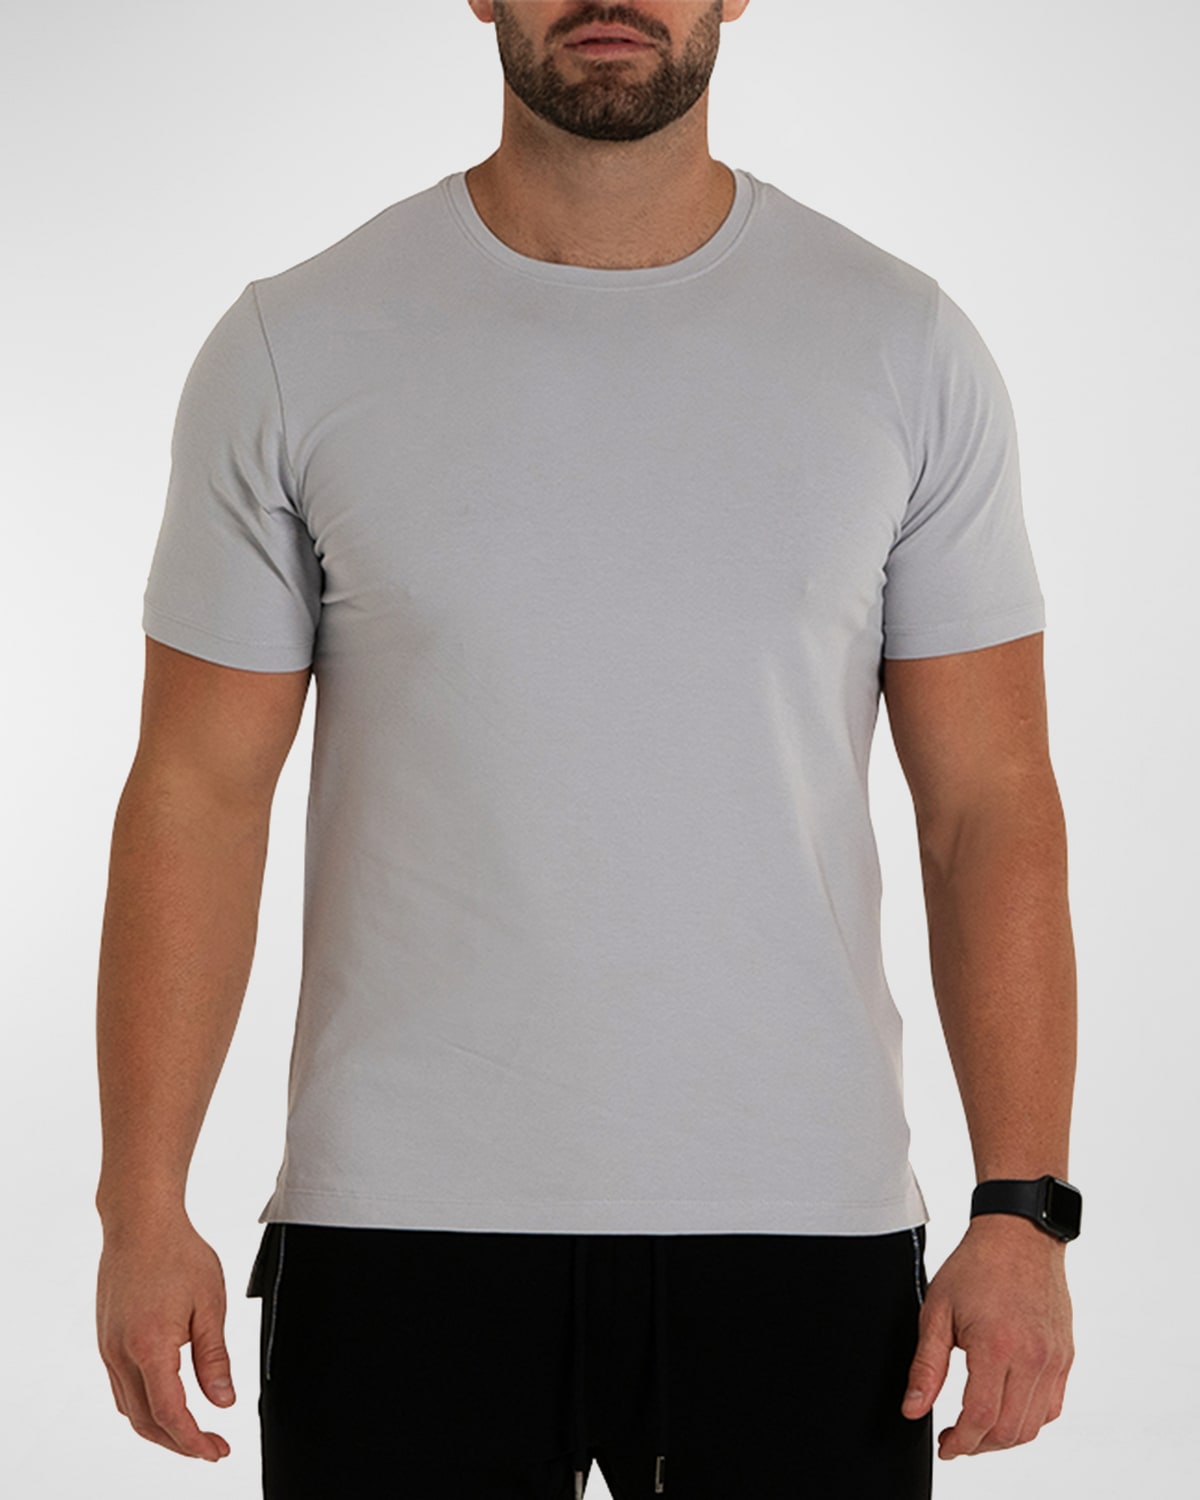 Maceoo Men's Simple T-Shirt